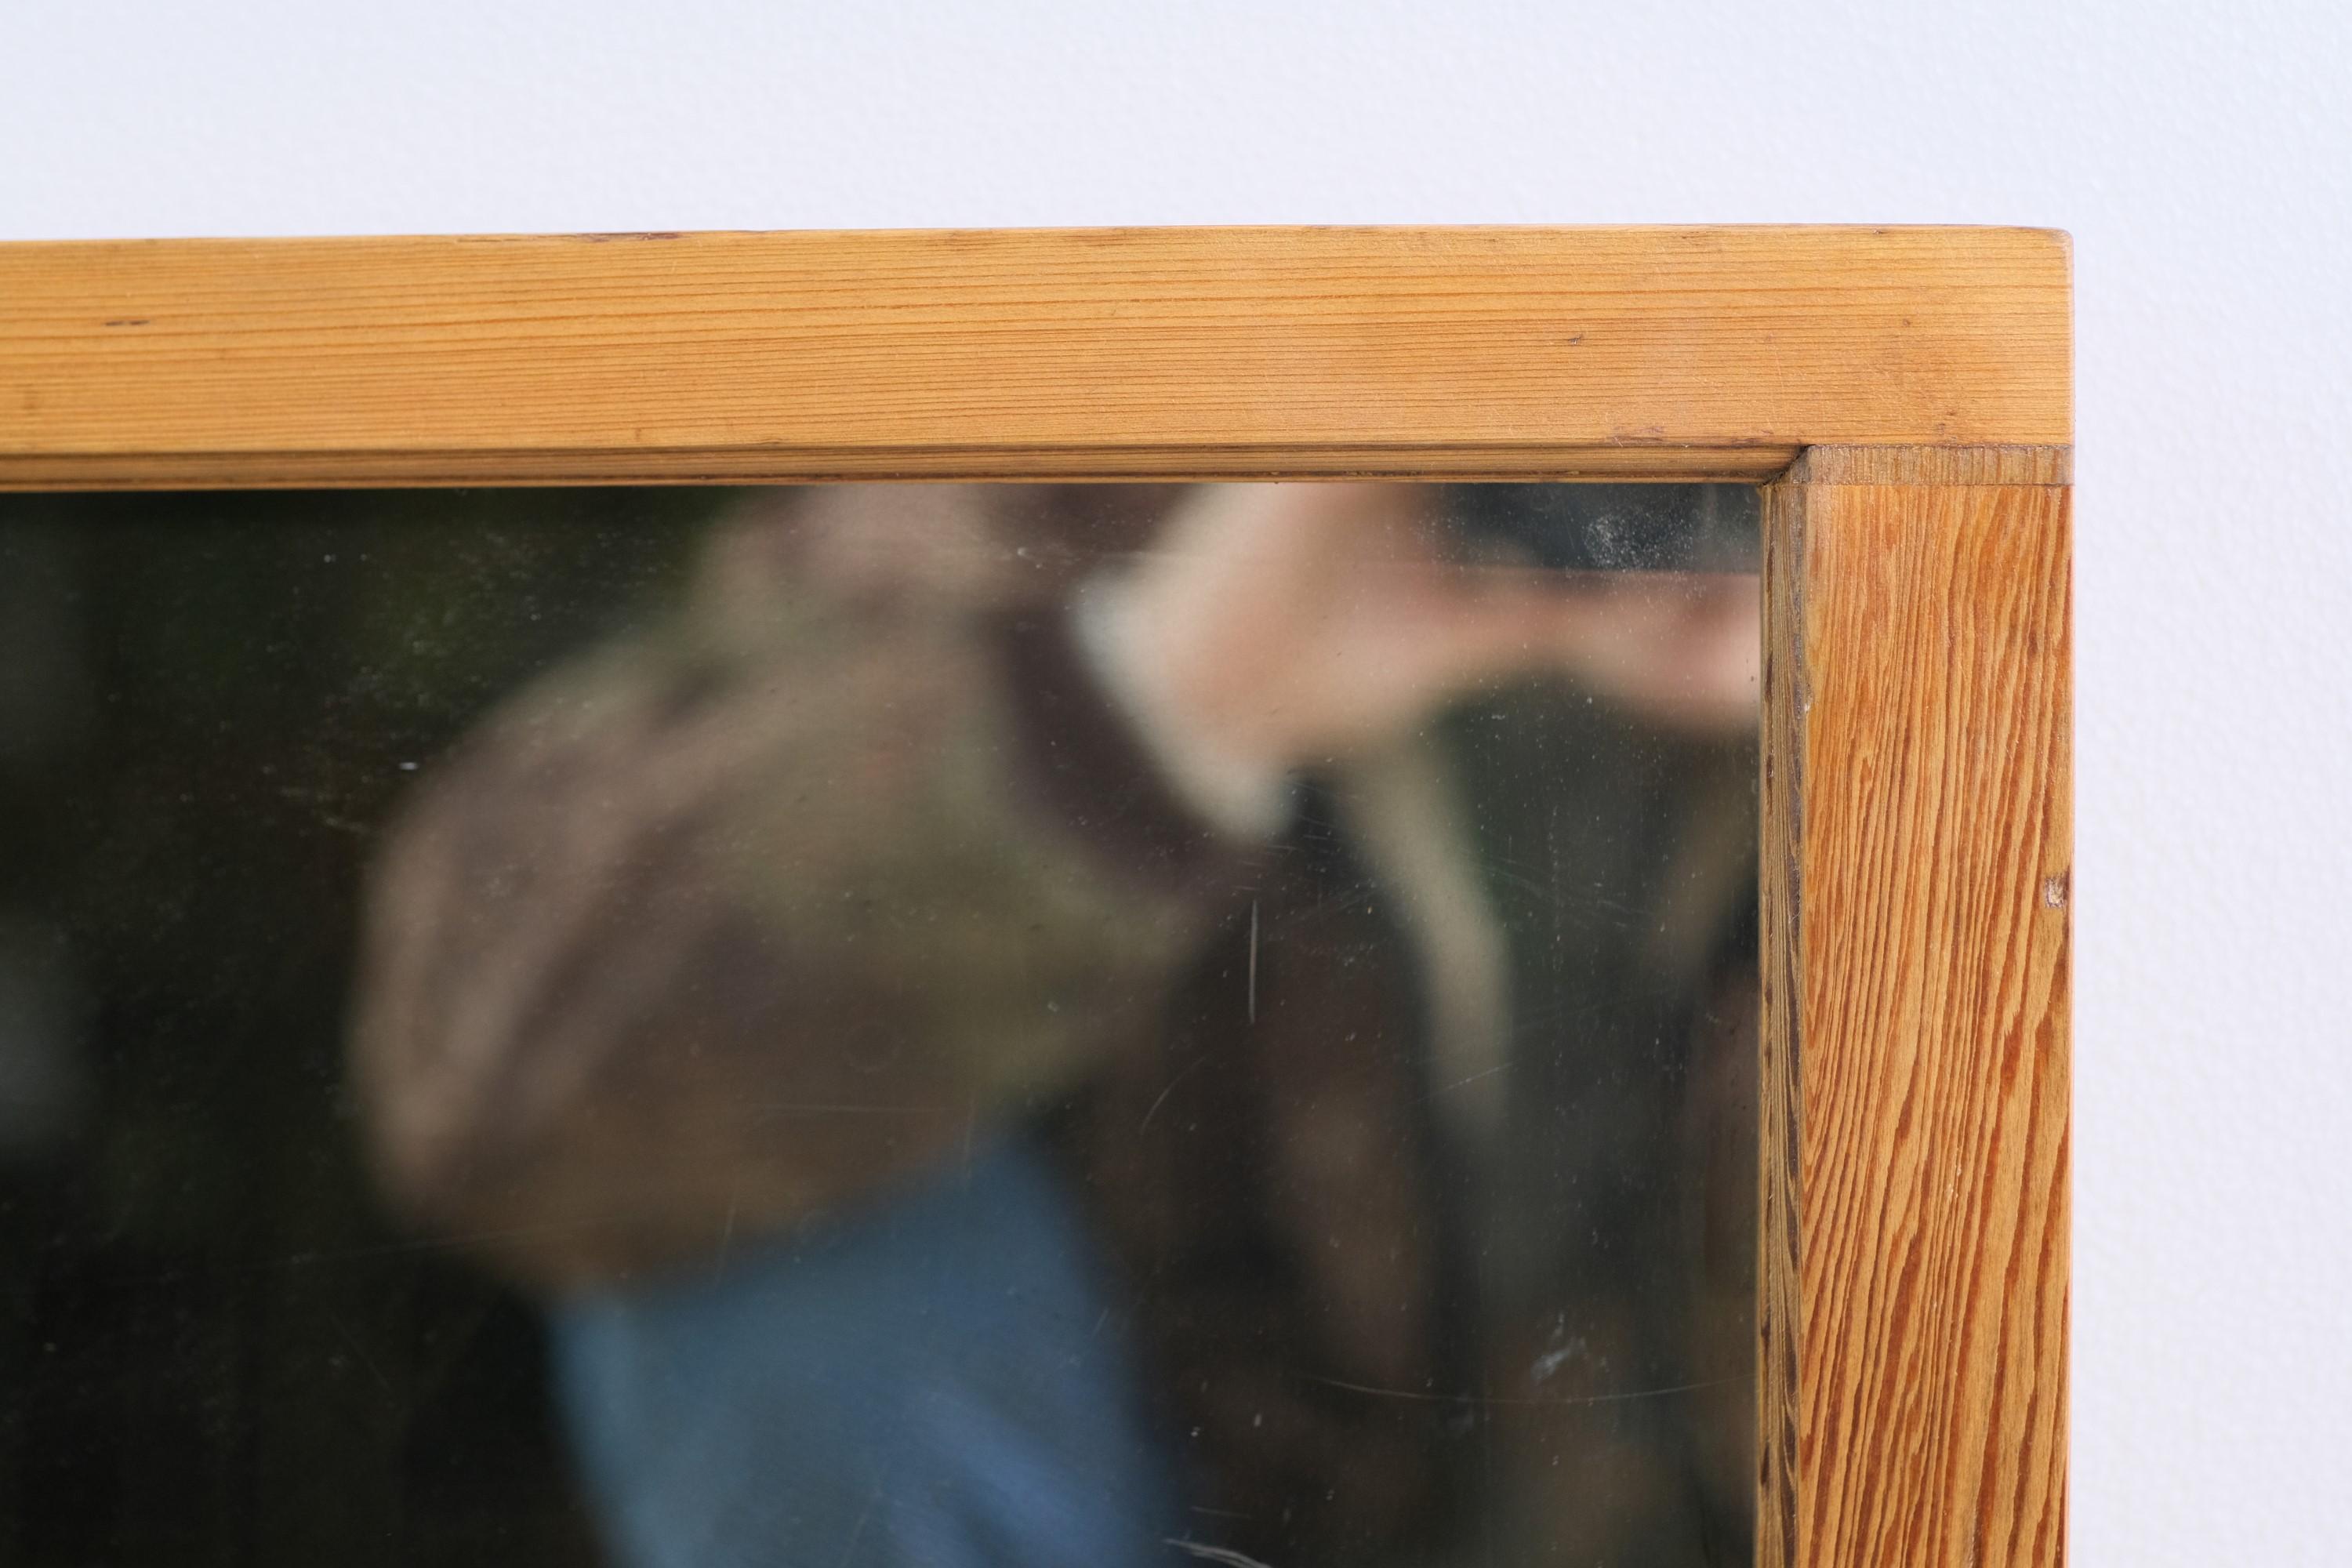 Fenêtre du début du 20e siècle avec un décalque original du logo White Owl Cigar monté près du bas de la vitre ondulée. Le verre lui-même a été argenté et constitue désormais un miroir attrayant. Quelques rayures mineures sur le verre. Veuillez